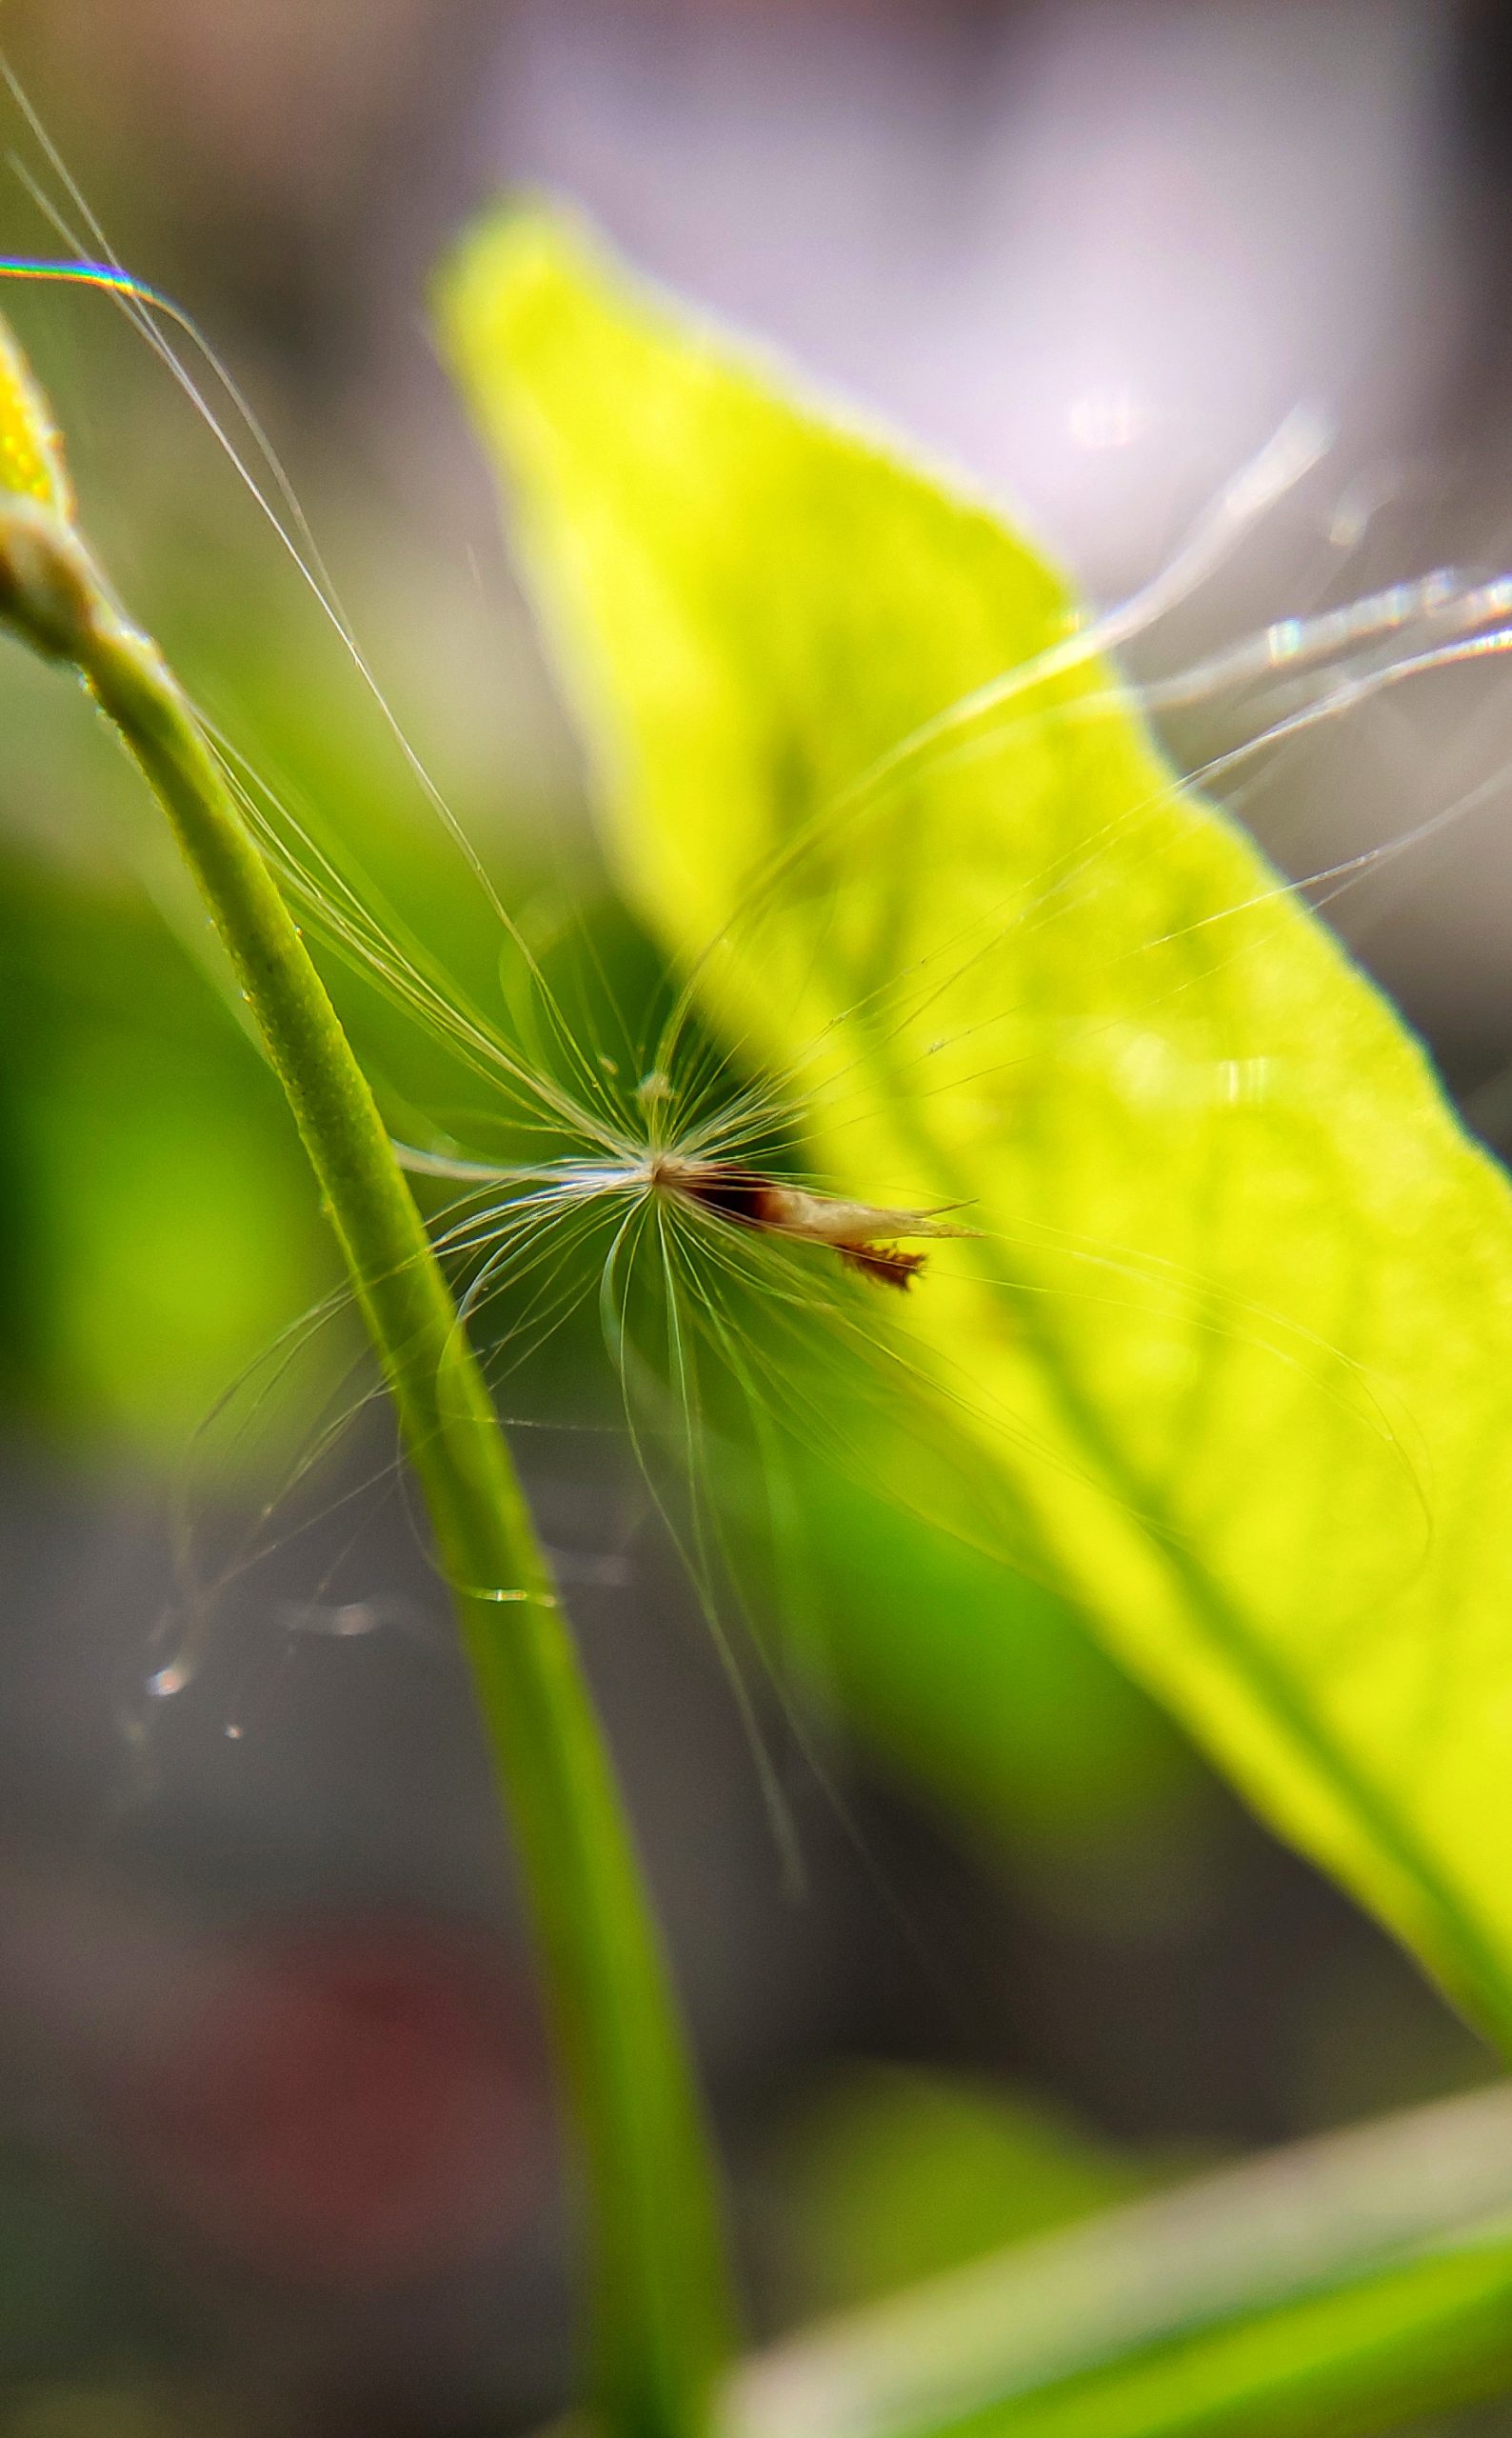 Tiny creature on leaf